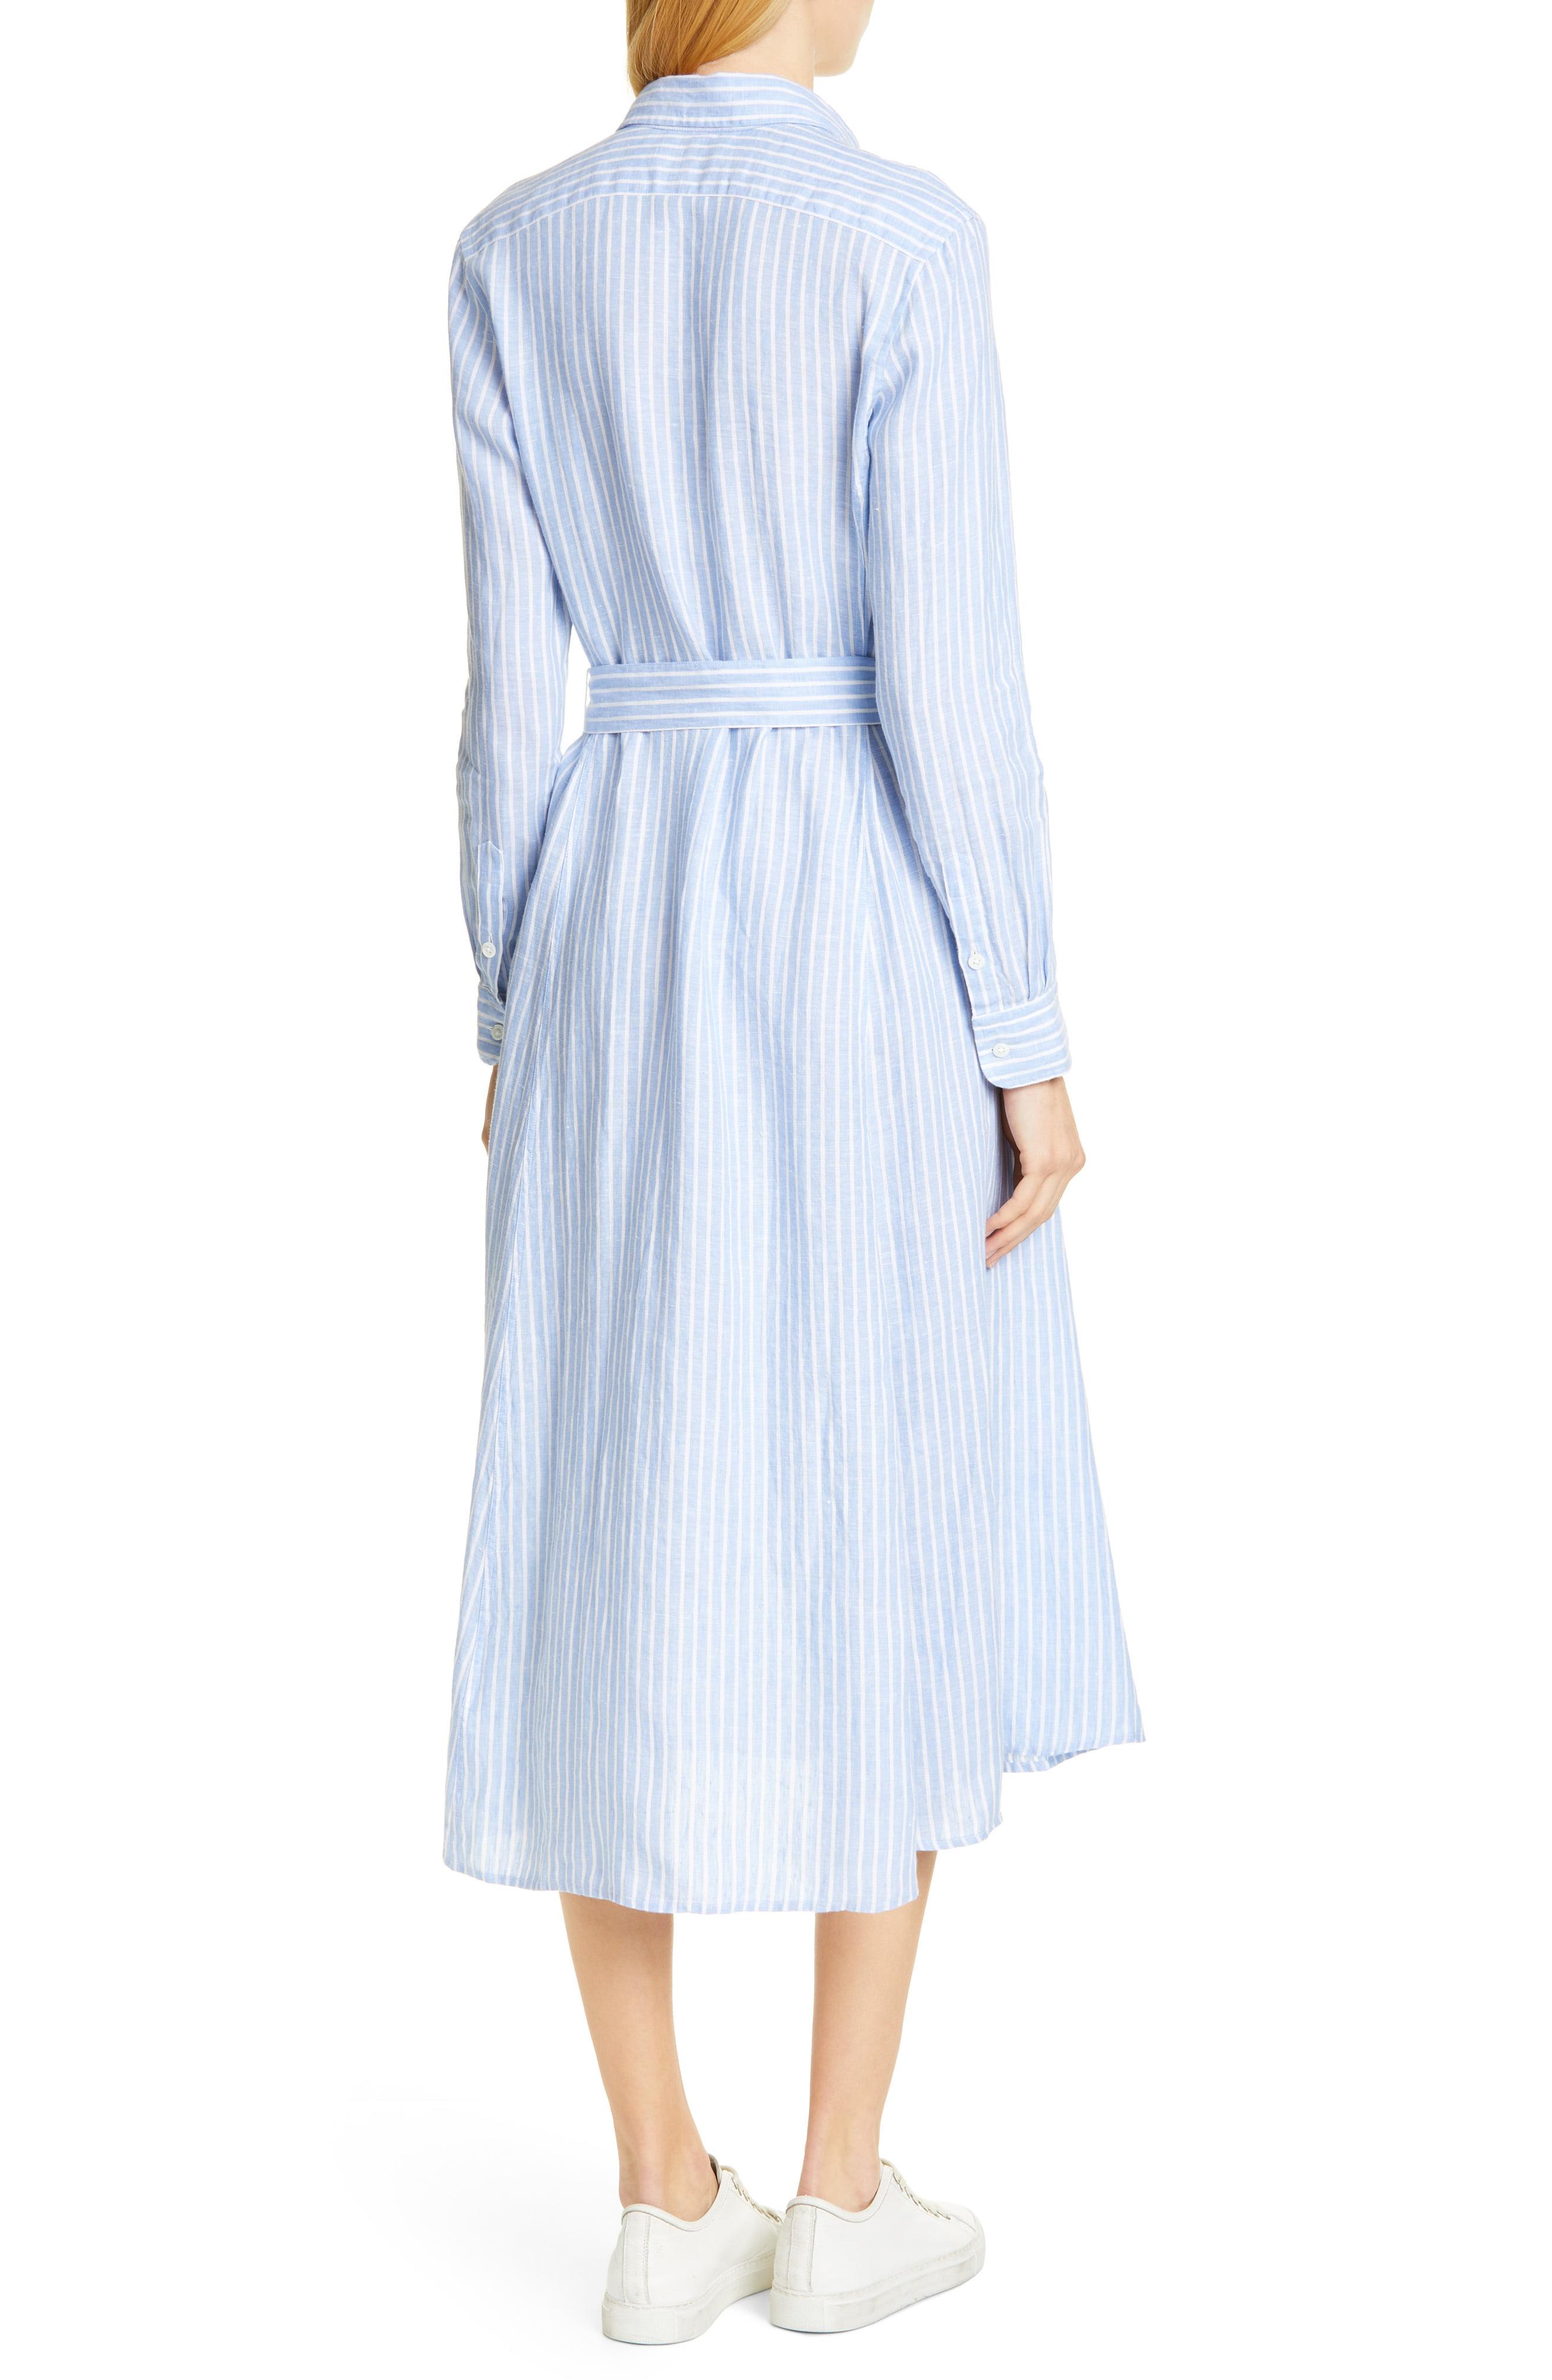 Lyst - Polo Ralph Lauren Women's Ashton Striped Linen Shirt Dress